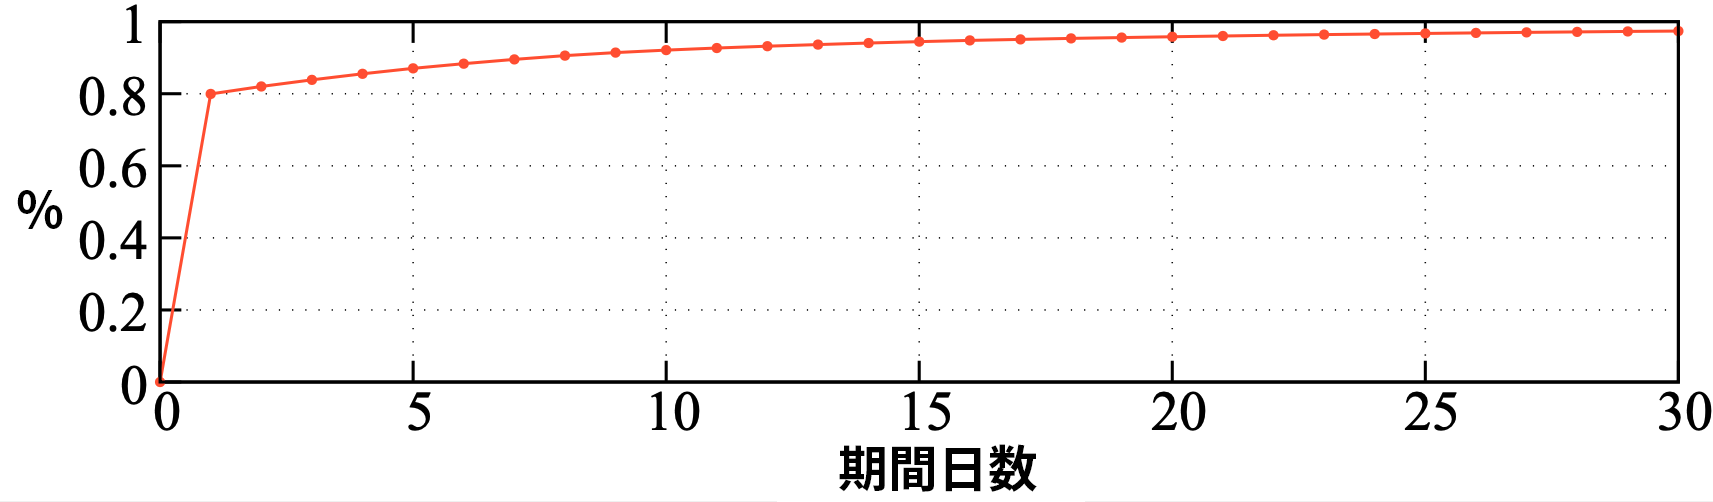 画像 2 は、ある特定ドメインのライフ サイクルを示したグラフです。横軸は期間の日数、縦軸はパーセンテージを表しています。 